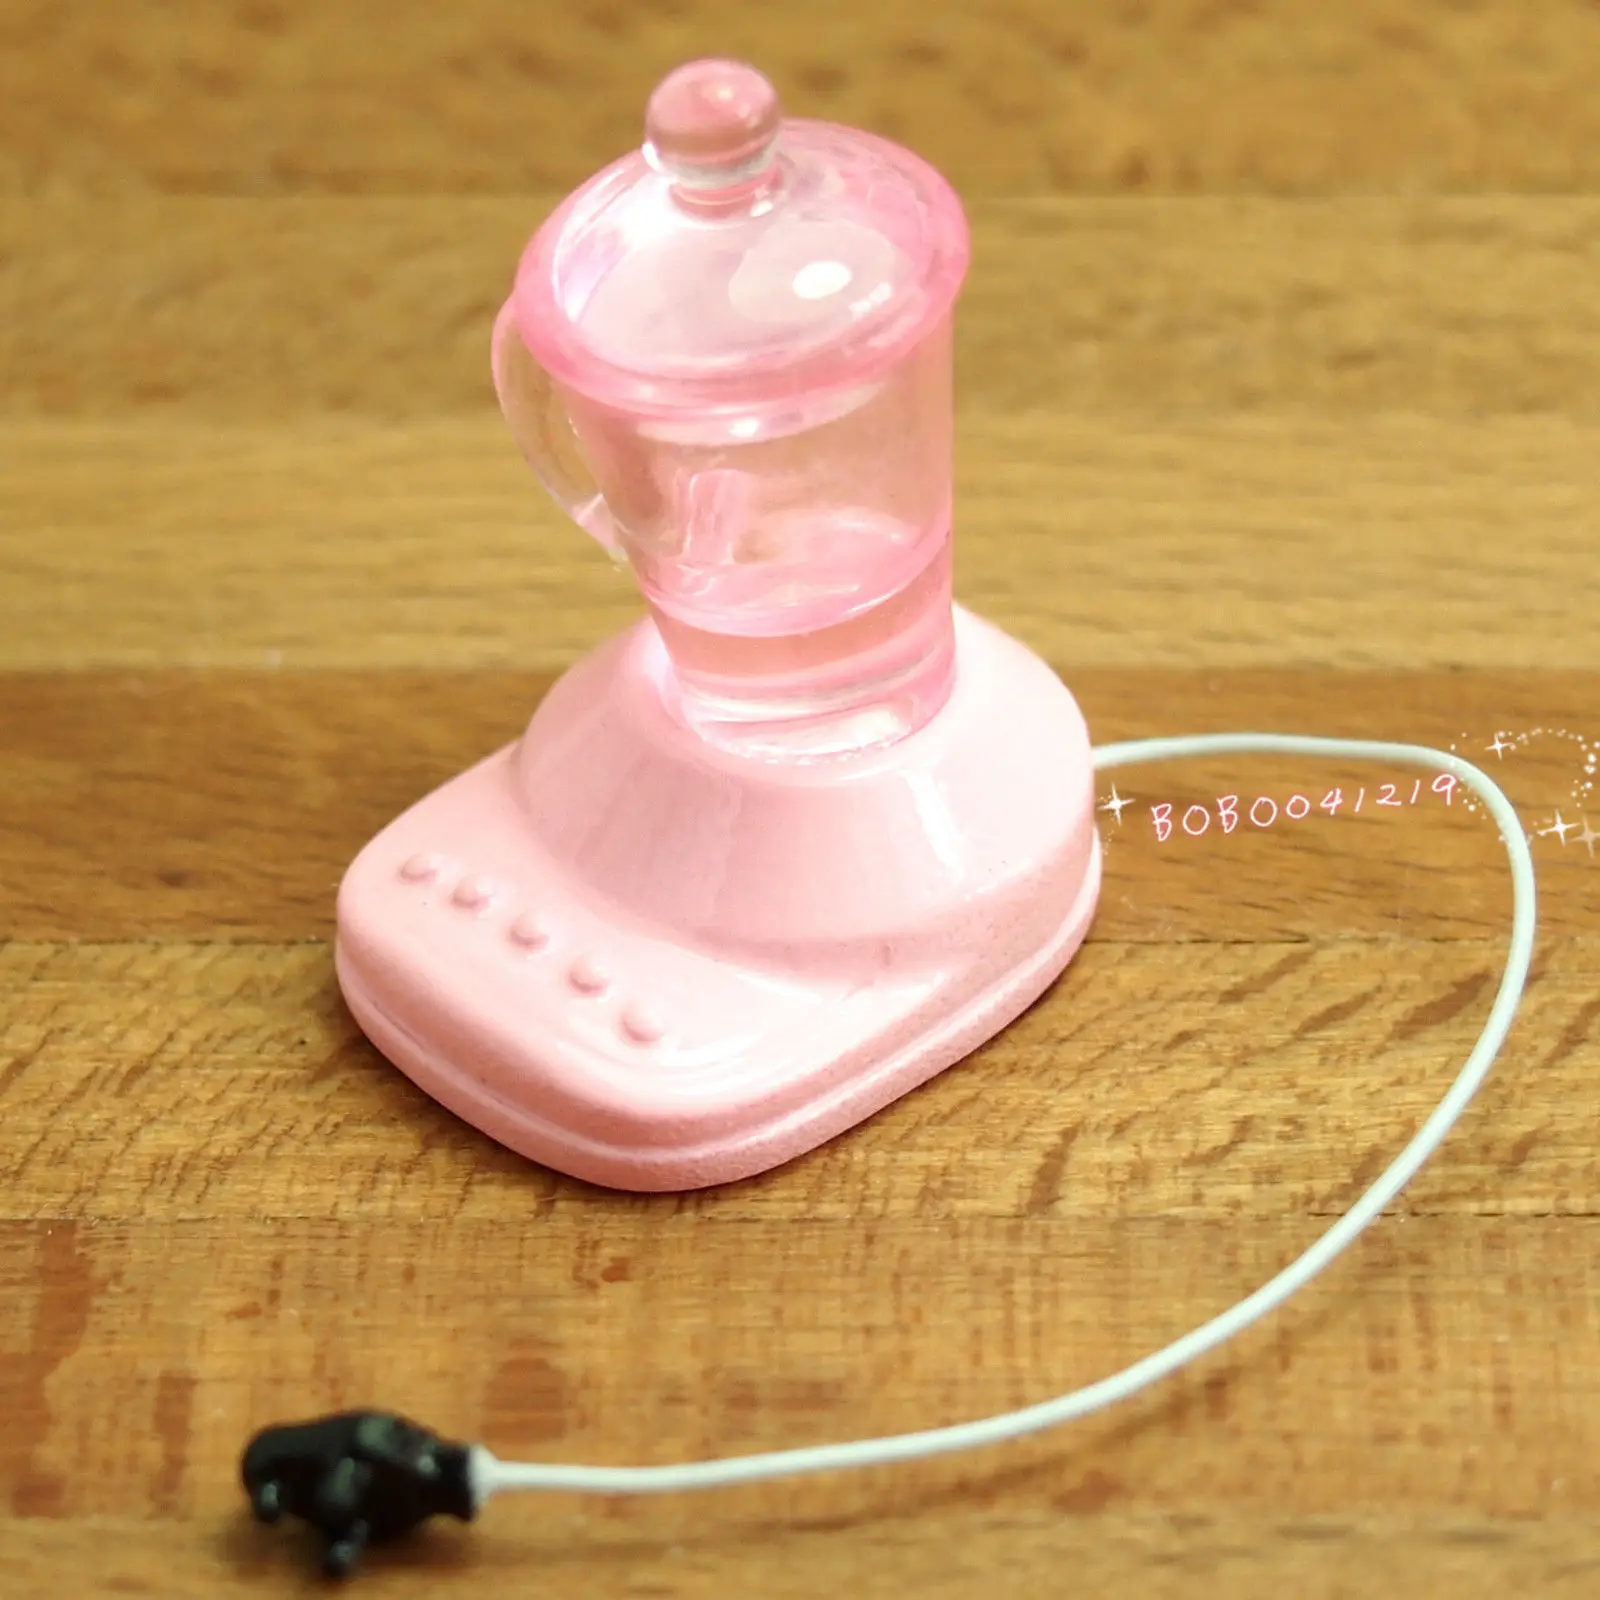 Кукольный домик Миниатюрная игрушка 1:12 Кухня в Пластик розовый миксеры H2.2cm SPO184